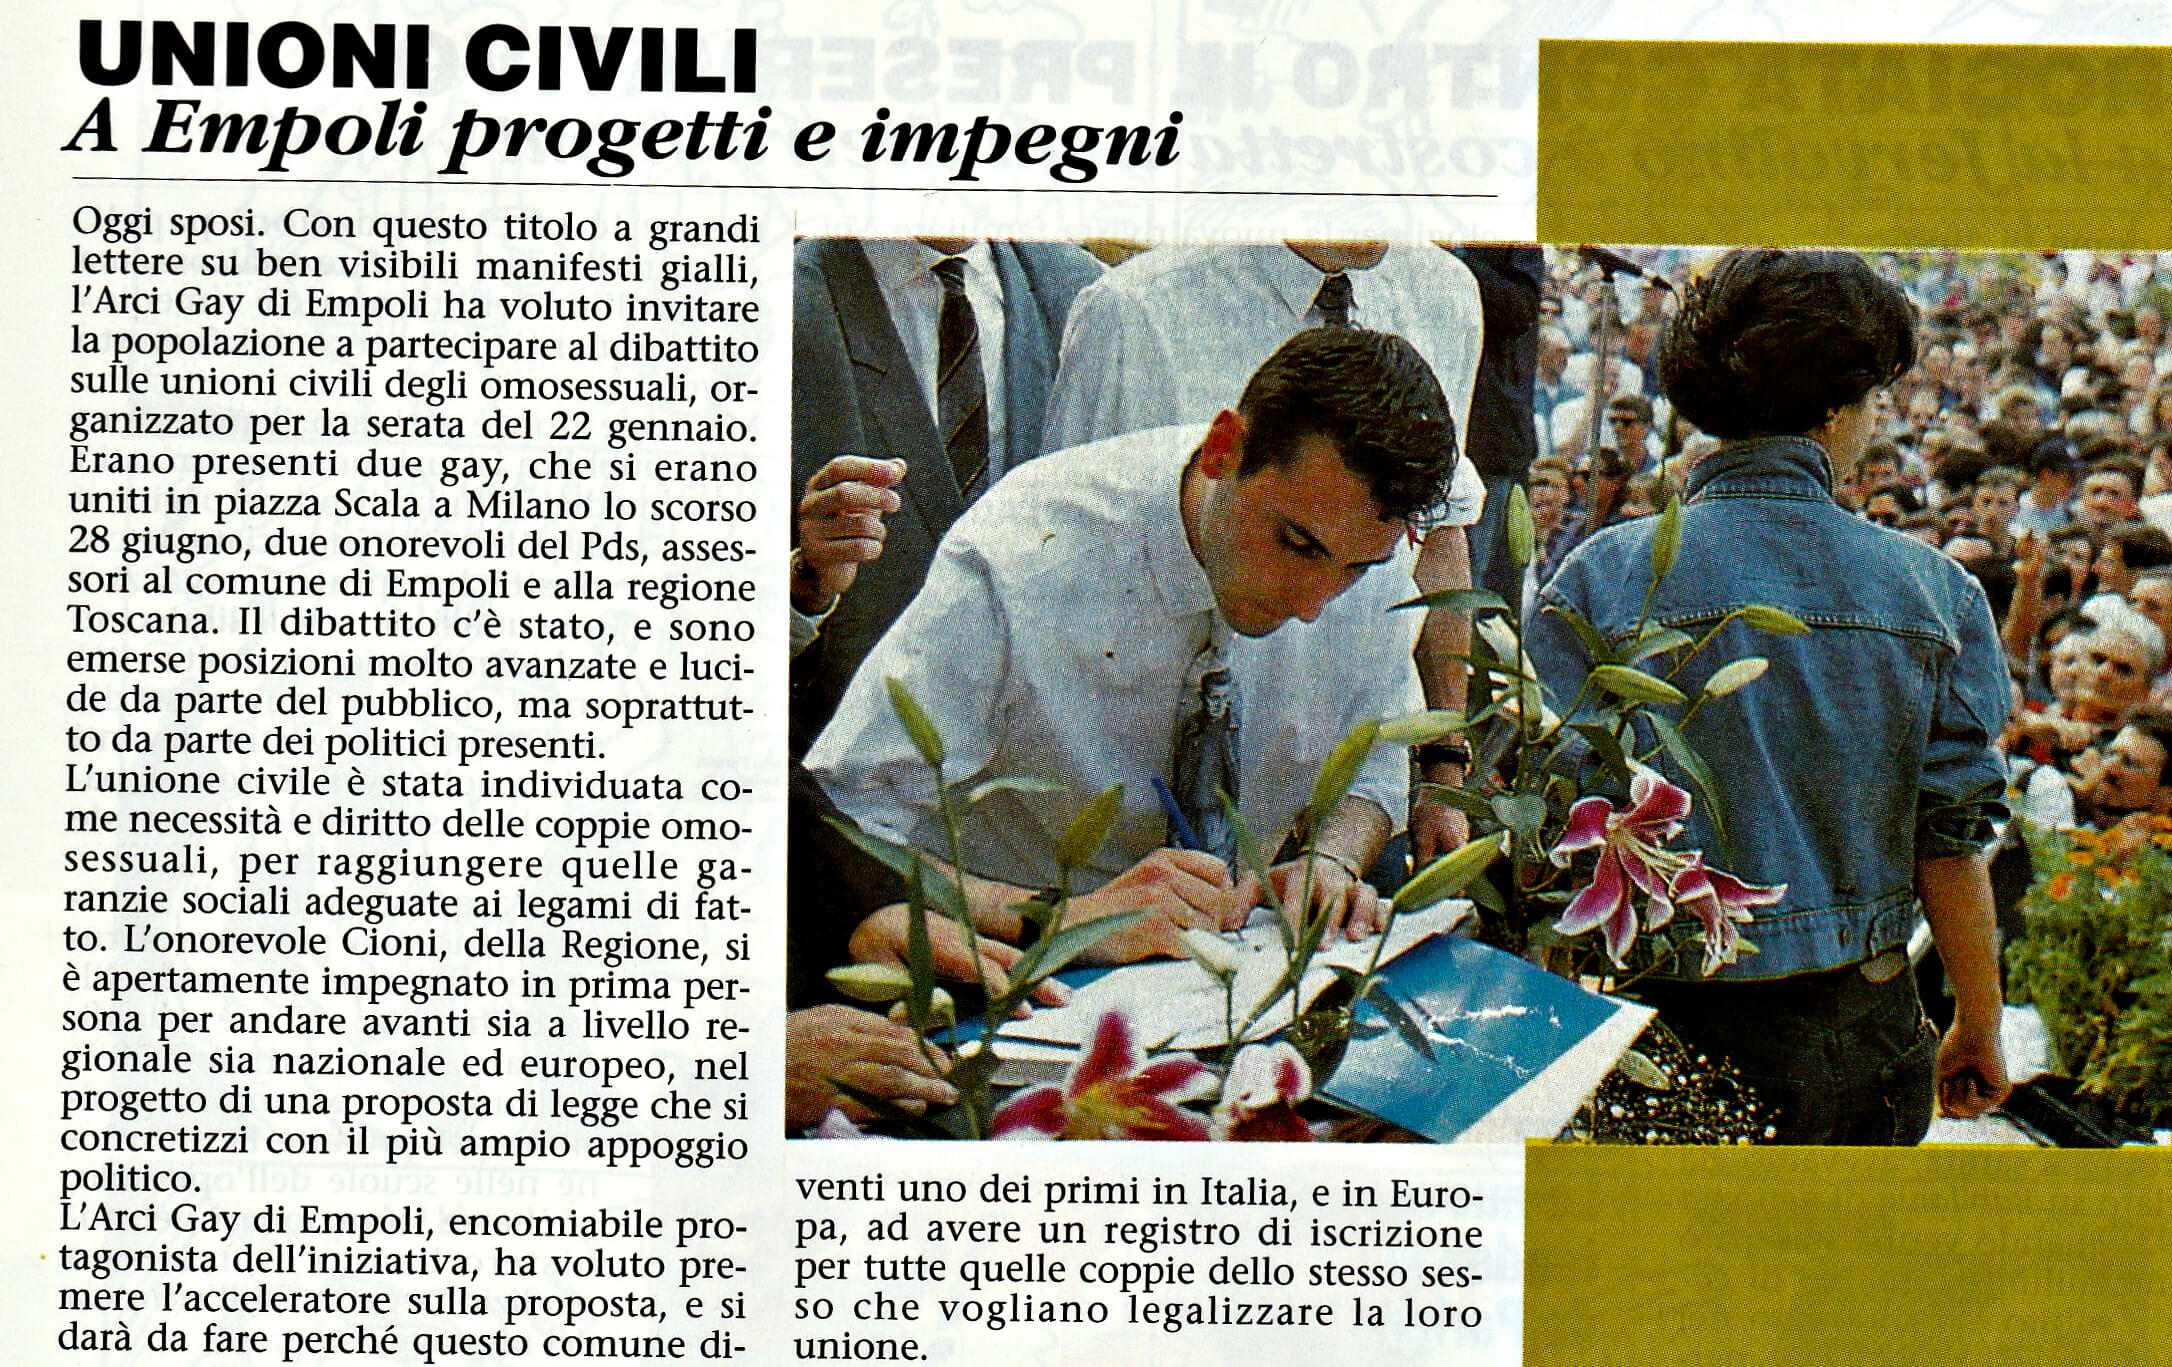 Dibattito sulle unioni civili tra persone dello stesso sesso, promosso dall'Arcigay di Empoli il 22 gennaio 1993. Da ""Babilonia", febbraio 1993. Empoli, nello stesso anno, sarà la prima città italiana a dotarsi di un registro delle unioni civili. 